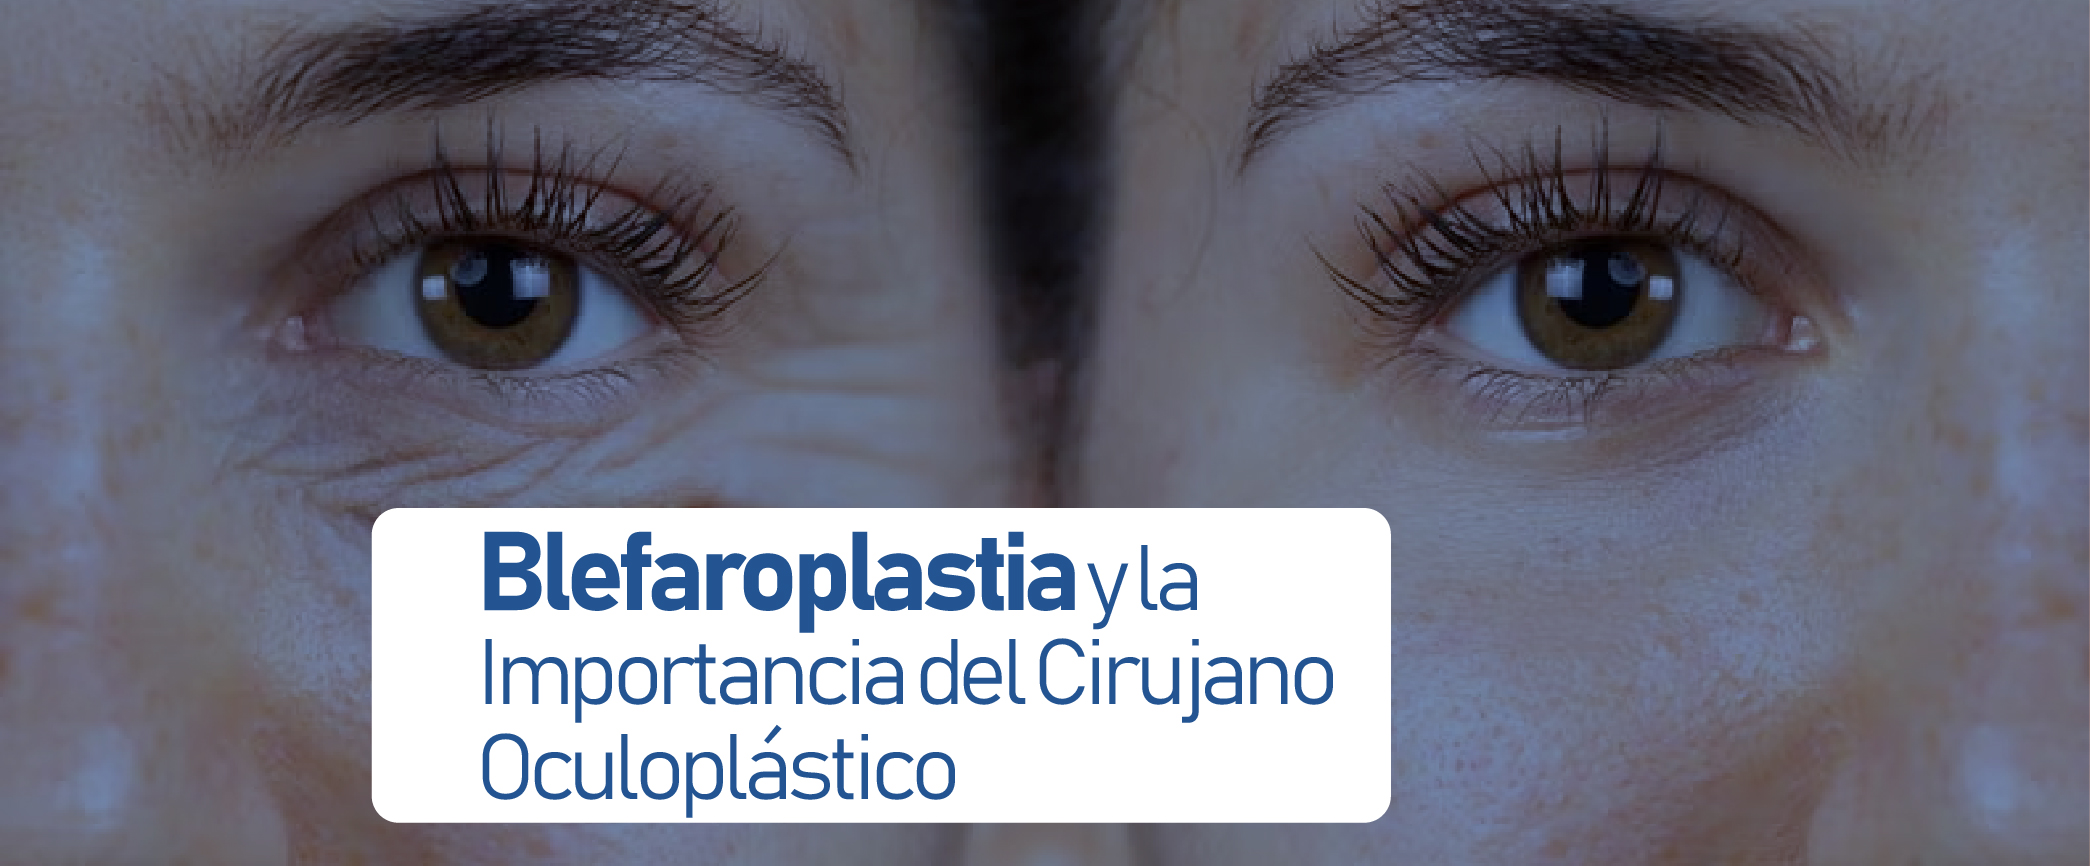 Blefaroplastia y la Importancia del Cirujano Oculoplástico